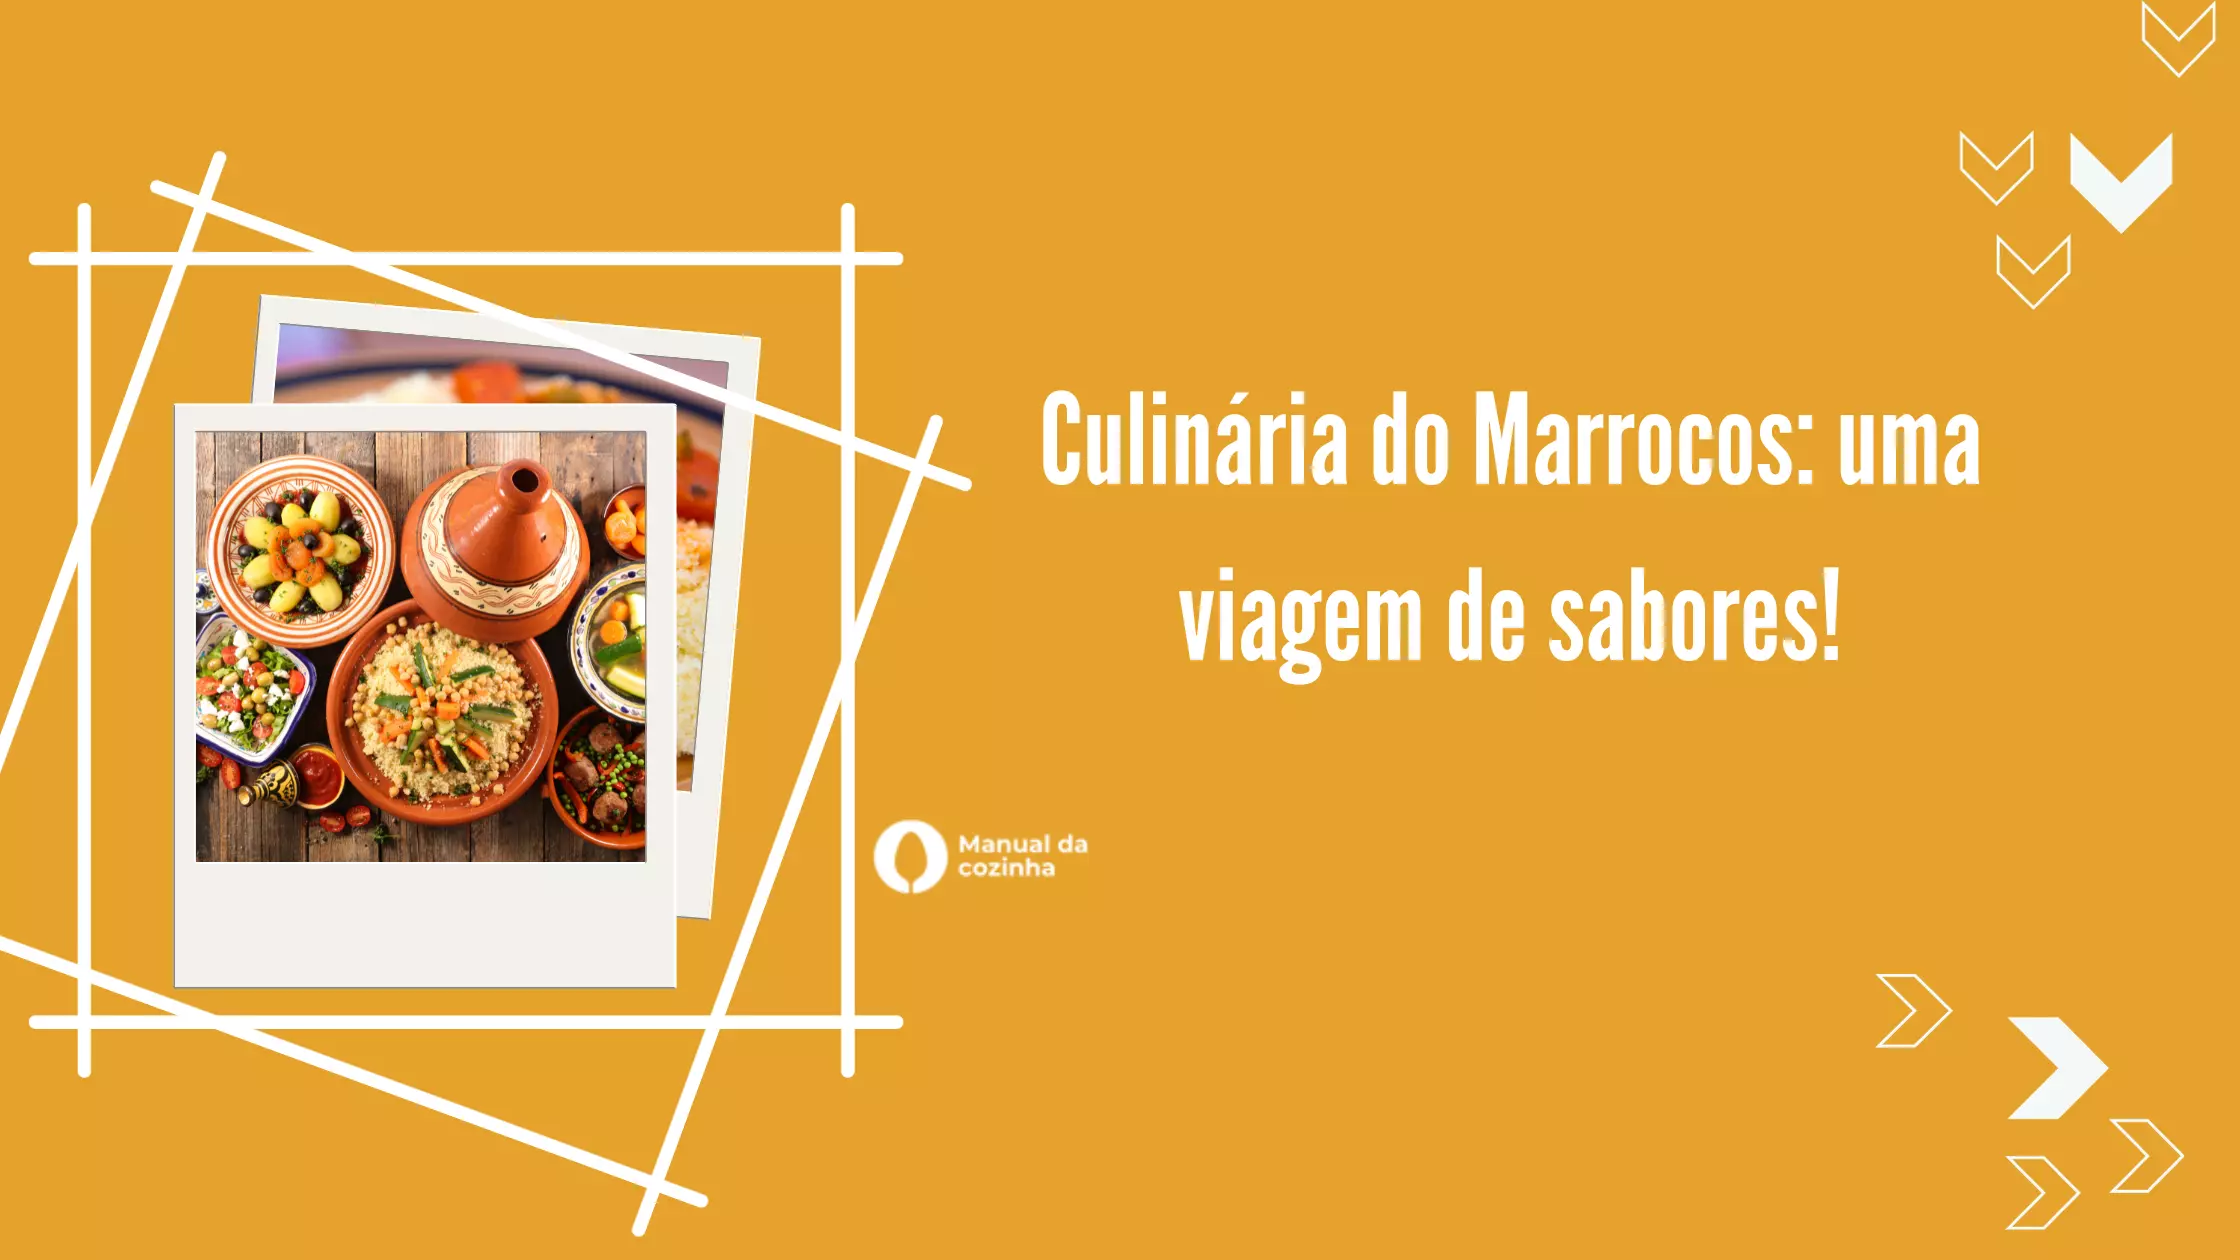 Culinária do Marrocos